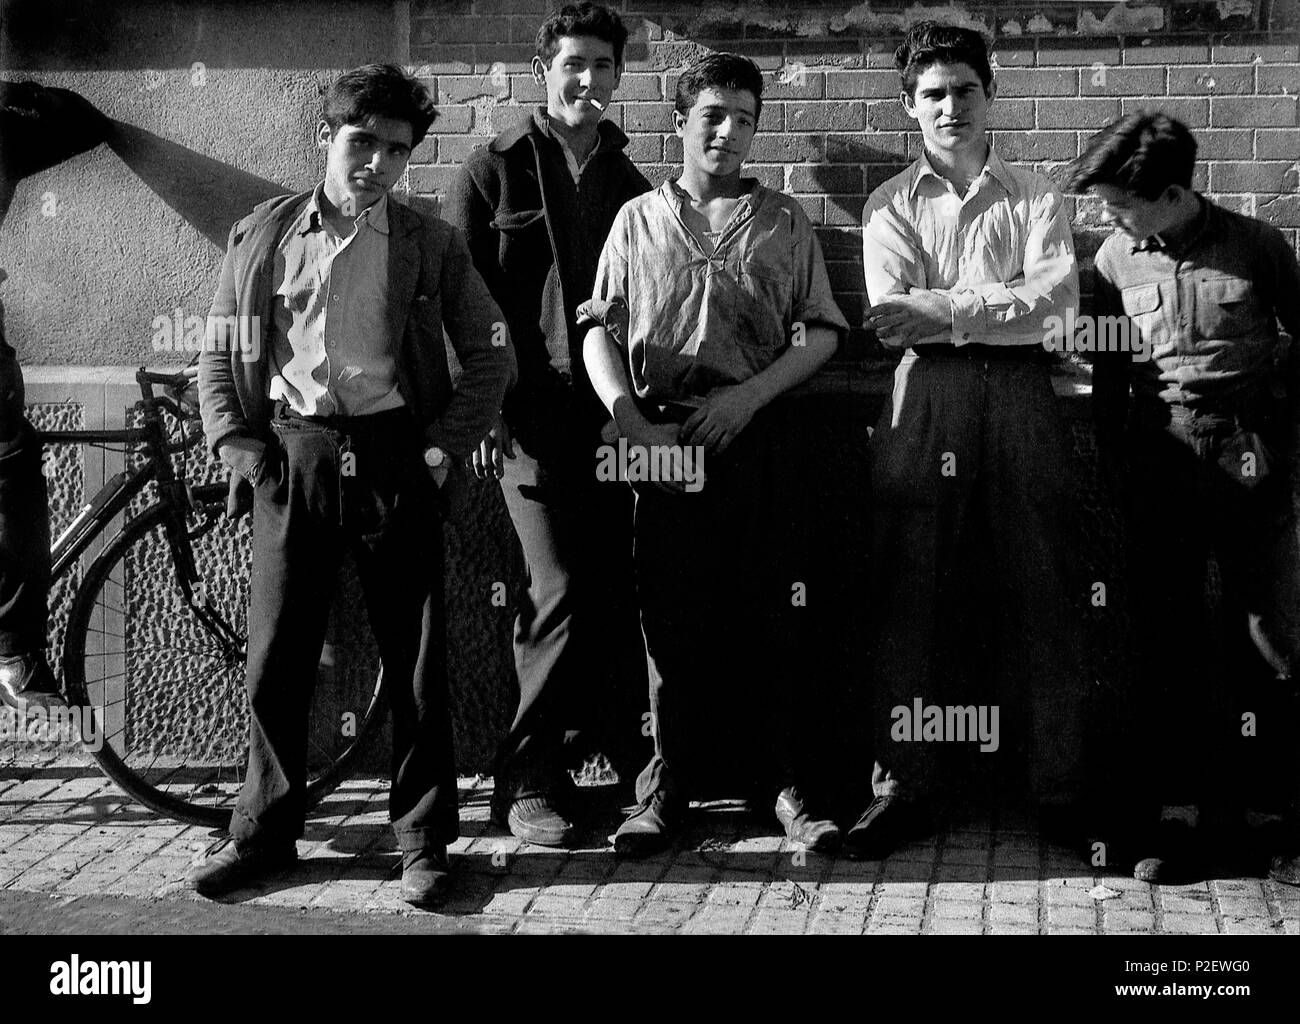 Grupo de jóvenes en los años 40. Imagen utilizada para la portada del libro 'Si te dicen que caí' (1976) del escritor español Juan Marsé. Stock Photo